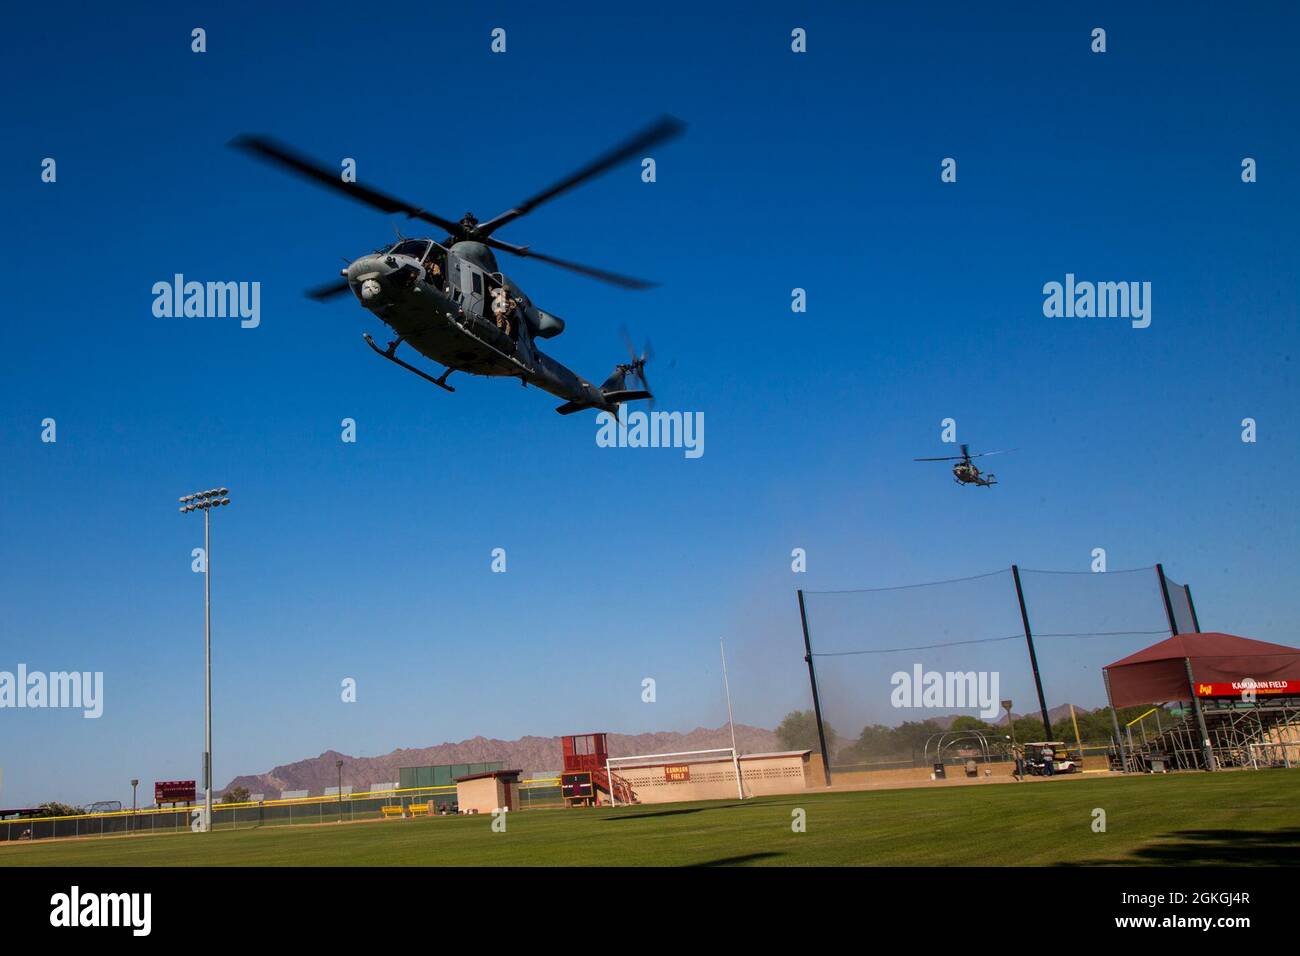 Corps des Marines des États-Unis UH-1Y, affecté à l'escadron des armes et tactiques de l'aviation maritime 1 (MAWTS-1), terres durant les tactiques de soutien d'assaut 3 (AST-3), exercice d'aide humanitaire à l'étranger, à l'appui du cours d'instructeur d'armes et de tactiques (WTI) 2-21, à l'Arizona Western College, à Yuma, en Arizona, en Arizona, le 16 avril 2021. WTI est un événement de formation de sept semaines organisé par MAWTS-1, offrant une formation tactique avancée standardisée et une certification des qualifications des instructeurs de l'unité pour soutenir la formation et la préparation à l'aviation maritime, et aide à développer et à employer des armes et des tactiques d'aviation. Banque D'Images